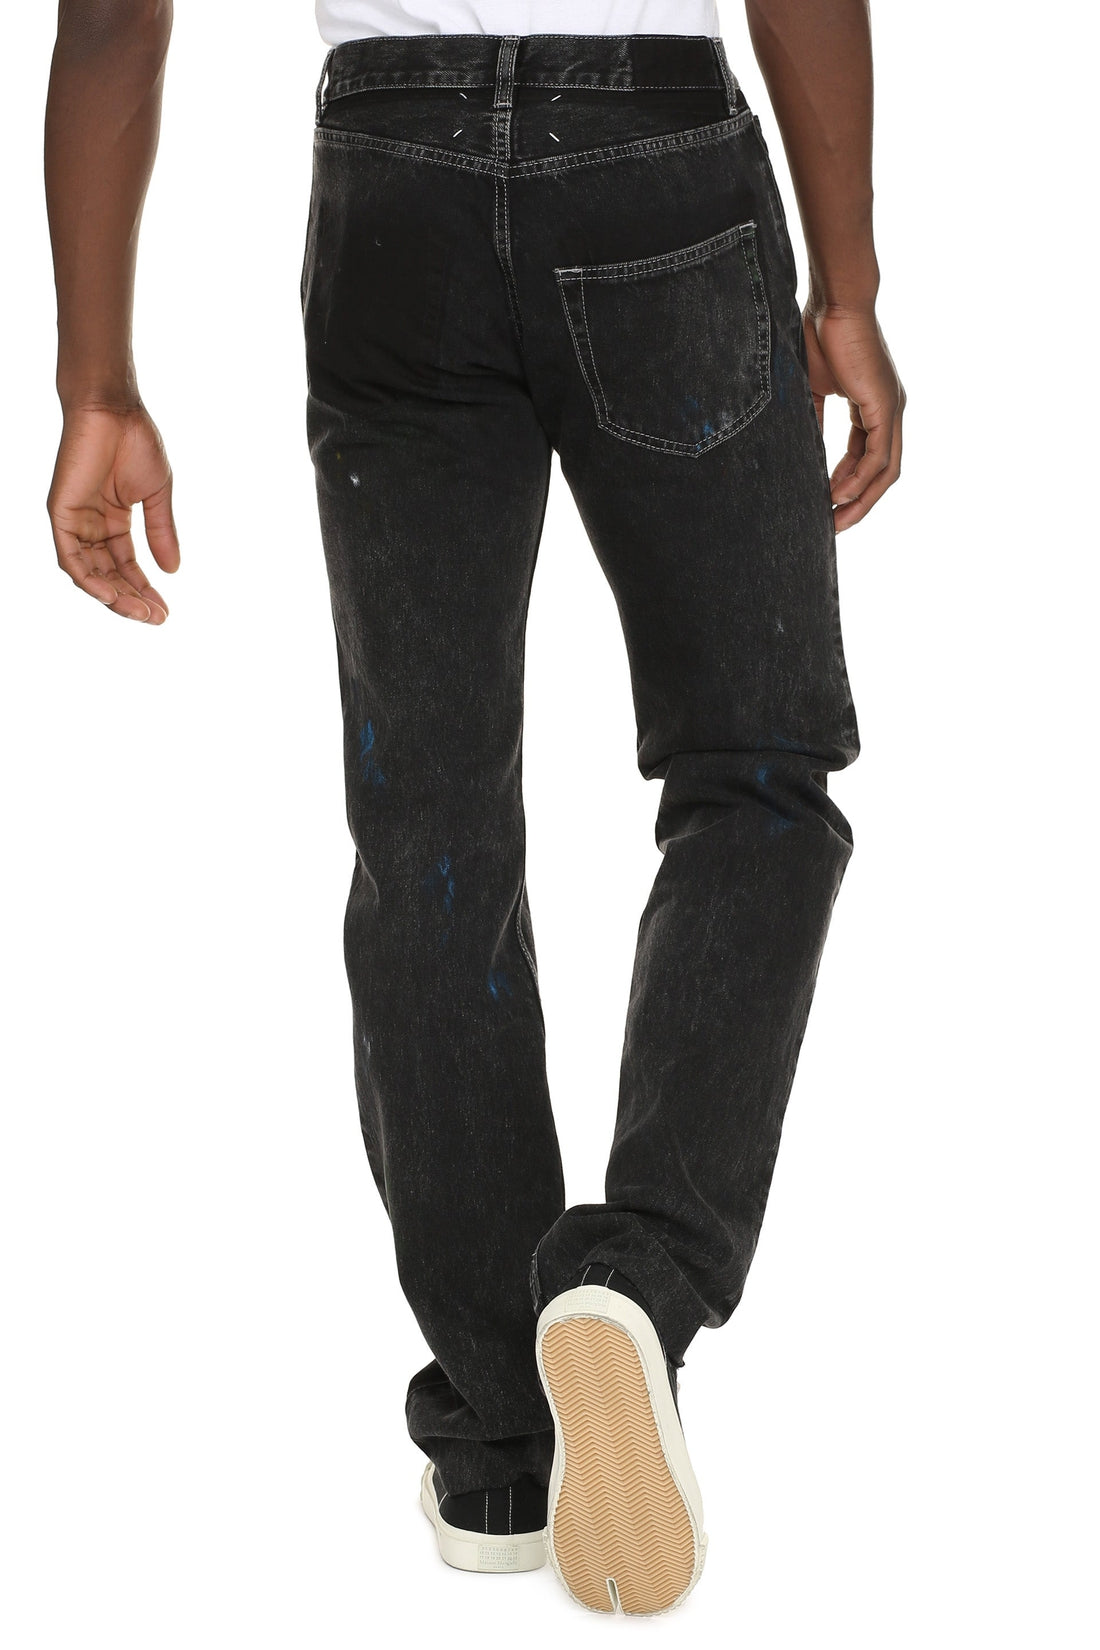 Maison Margiela-OUTLET-SALE-Straight leg jeans-ARCHIVIST